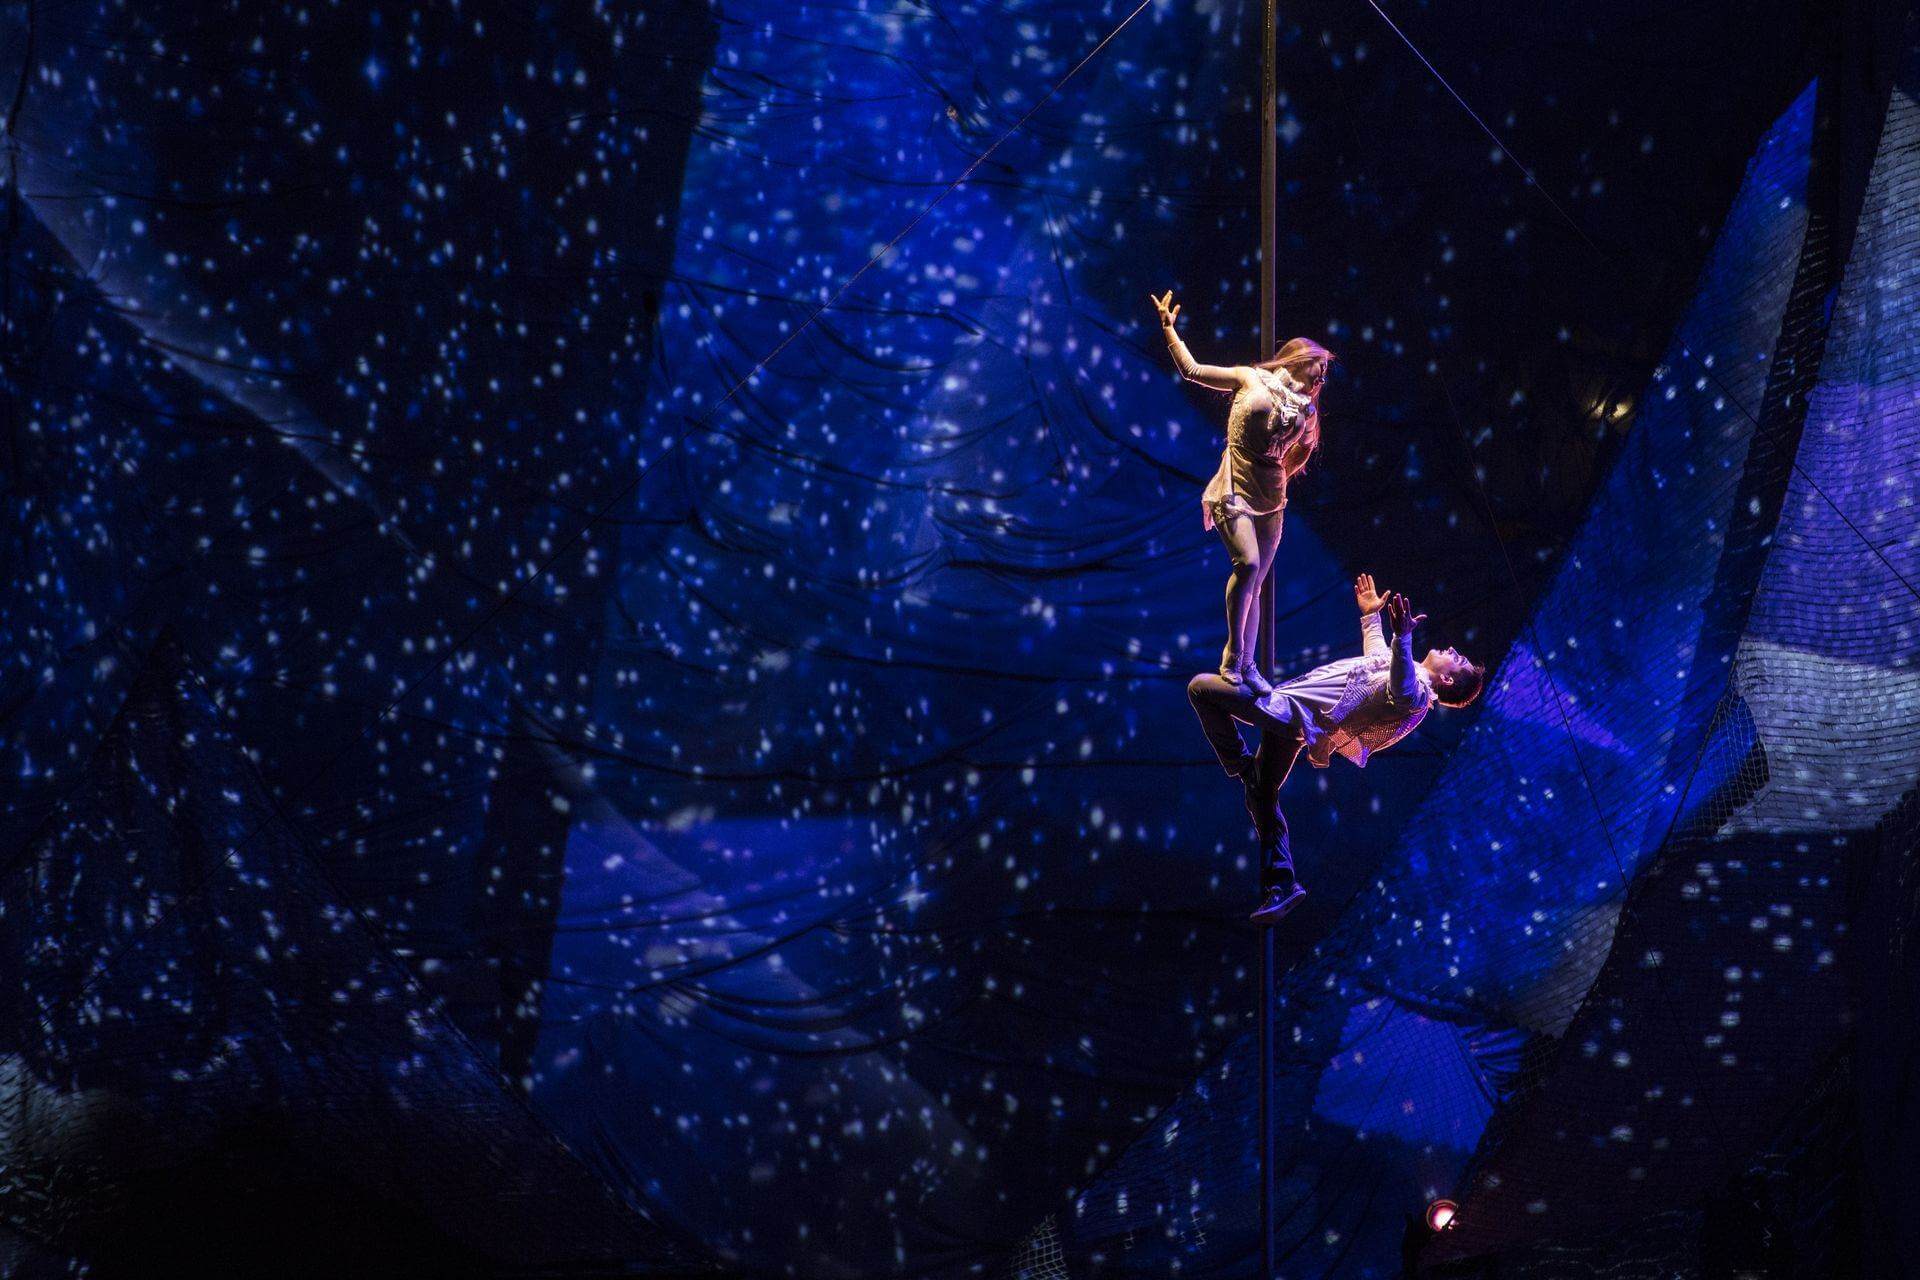 Scalada by Cirque du Soleil 2013 : représentation architecturale à partir d'une figure humaine